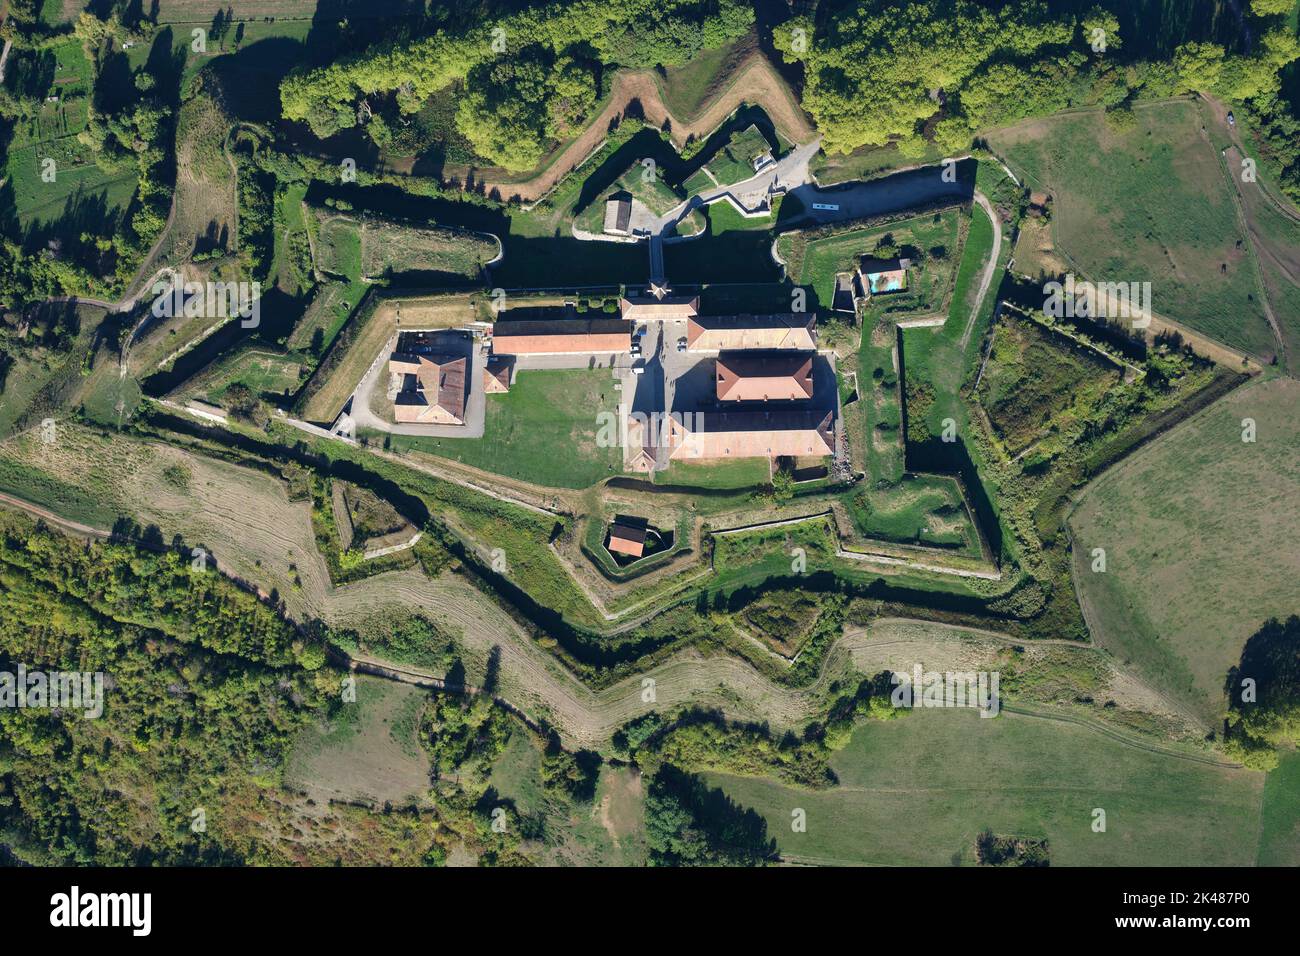 VISTA DALL'ALTO VERTICALE. Fortificazione militare storica su una collina con la sua terra a forma di stella. Forte Barraux, Isère, Auvergne-Rhône-Alpes, Francia. Foto Stock